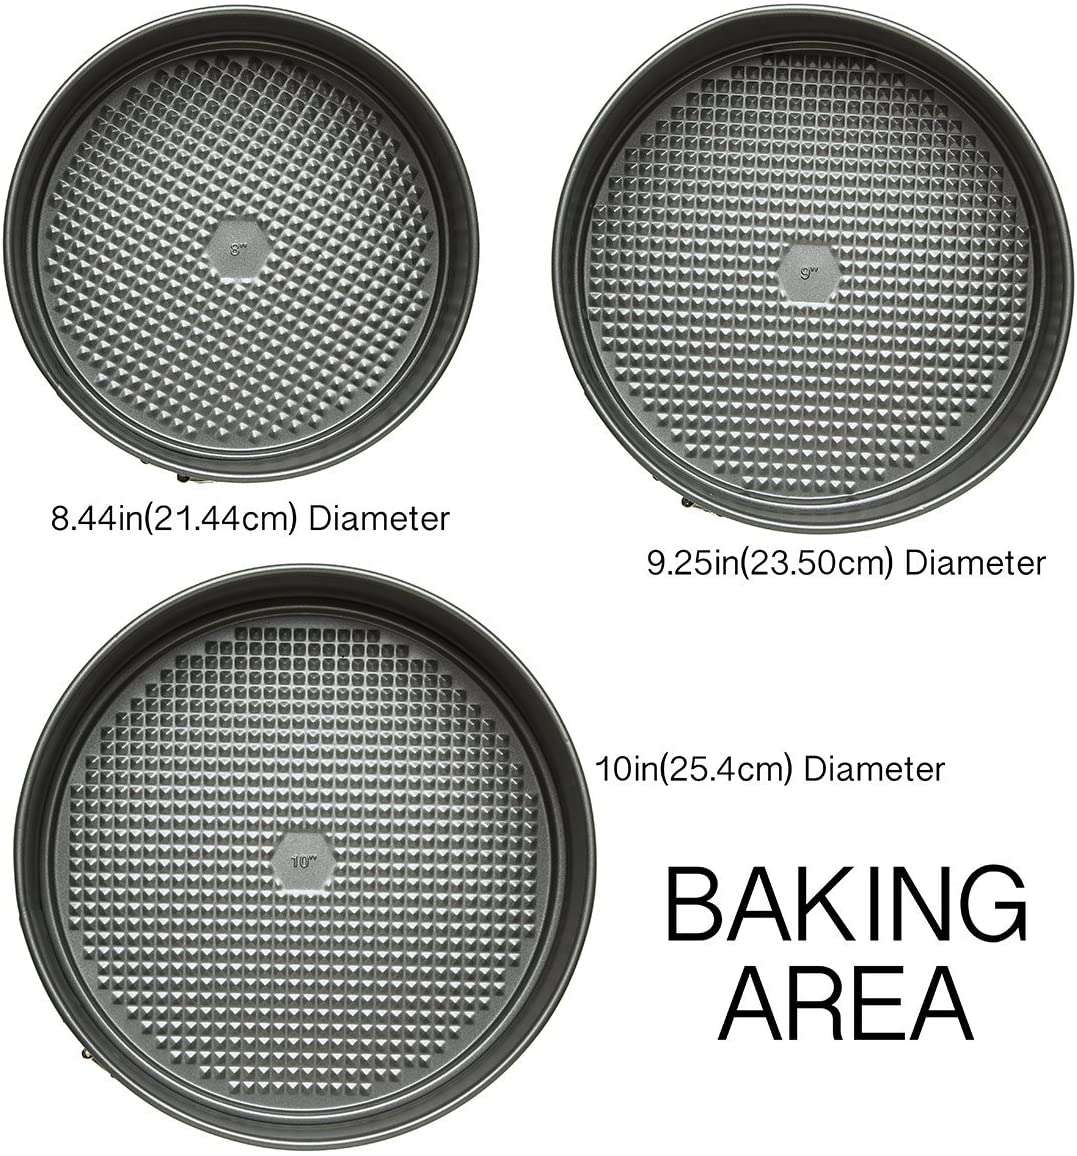 BakeIns 3 Piece Cookie Sheet Set - Ecolution – Ecolution Cookware